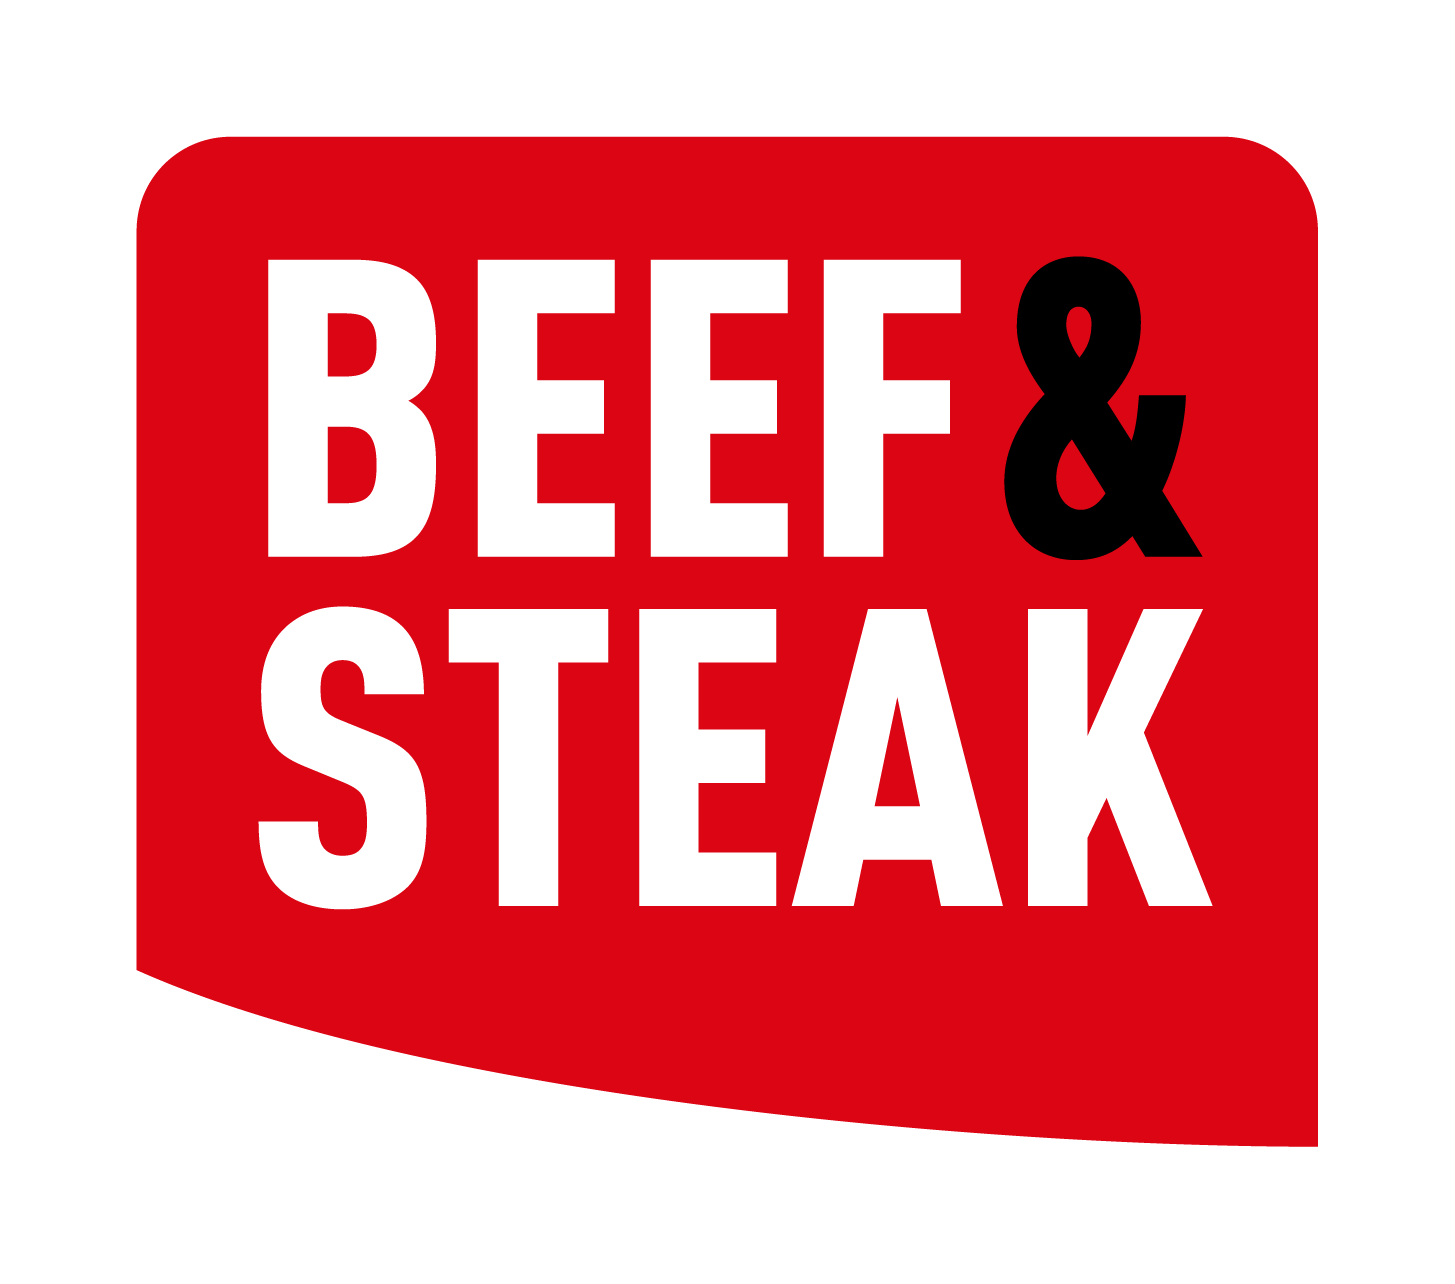 Trein Natte sneeuw Rimpelingen USA Baby Back Ribs - Beef & Steak